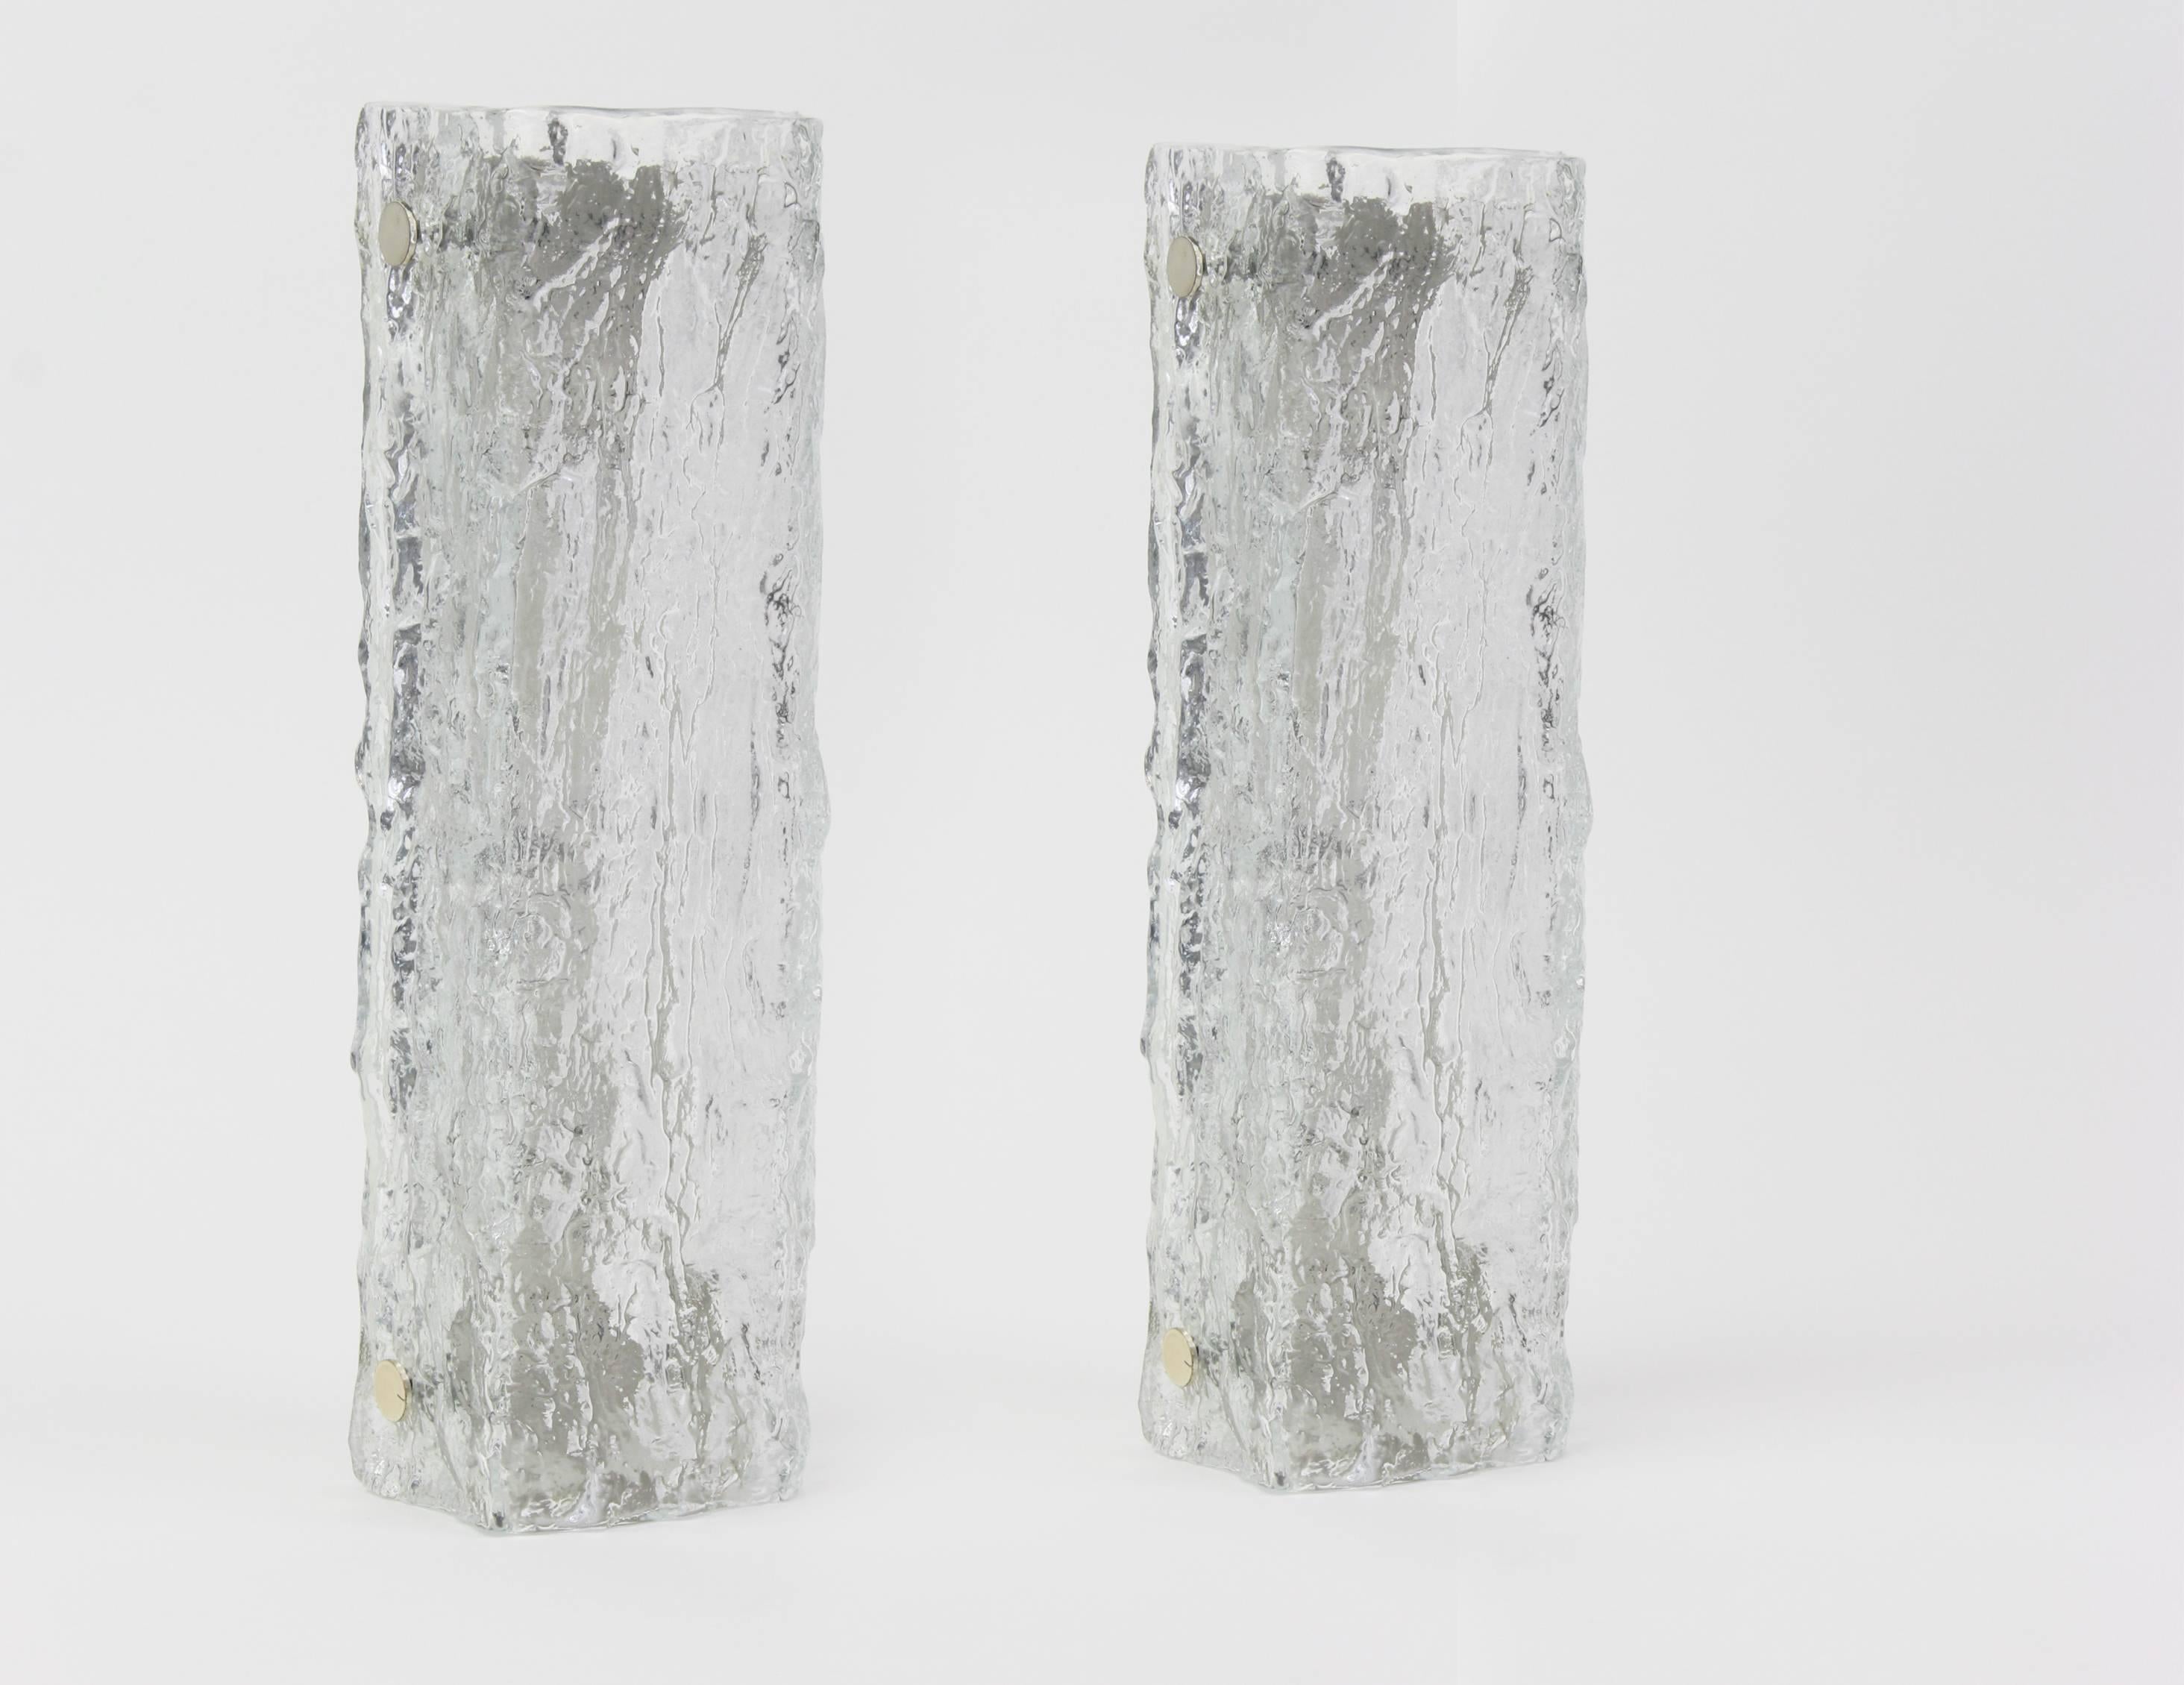 Wunderschönes Paar eckiger Glasleuchten mit Messinghalterungen von Hillebrand Leuchten, Deutschland, ca. 1970er Jahre.


Hochwertig und in sehr gutem Zustand. Gereinigt, gut verkabelt und einsatzbereit. 

Jede Leuchte benötigt 2 x E14